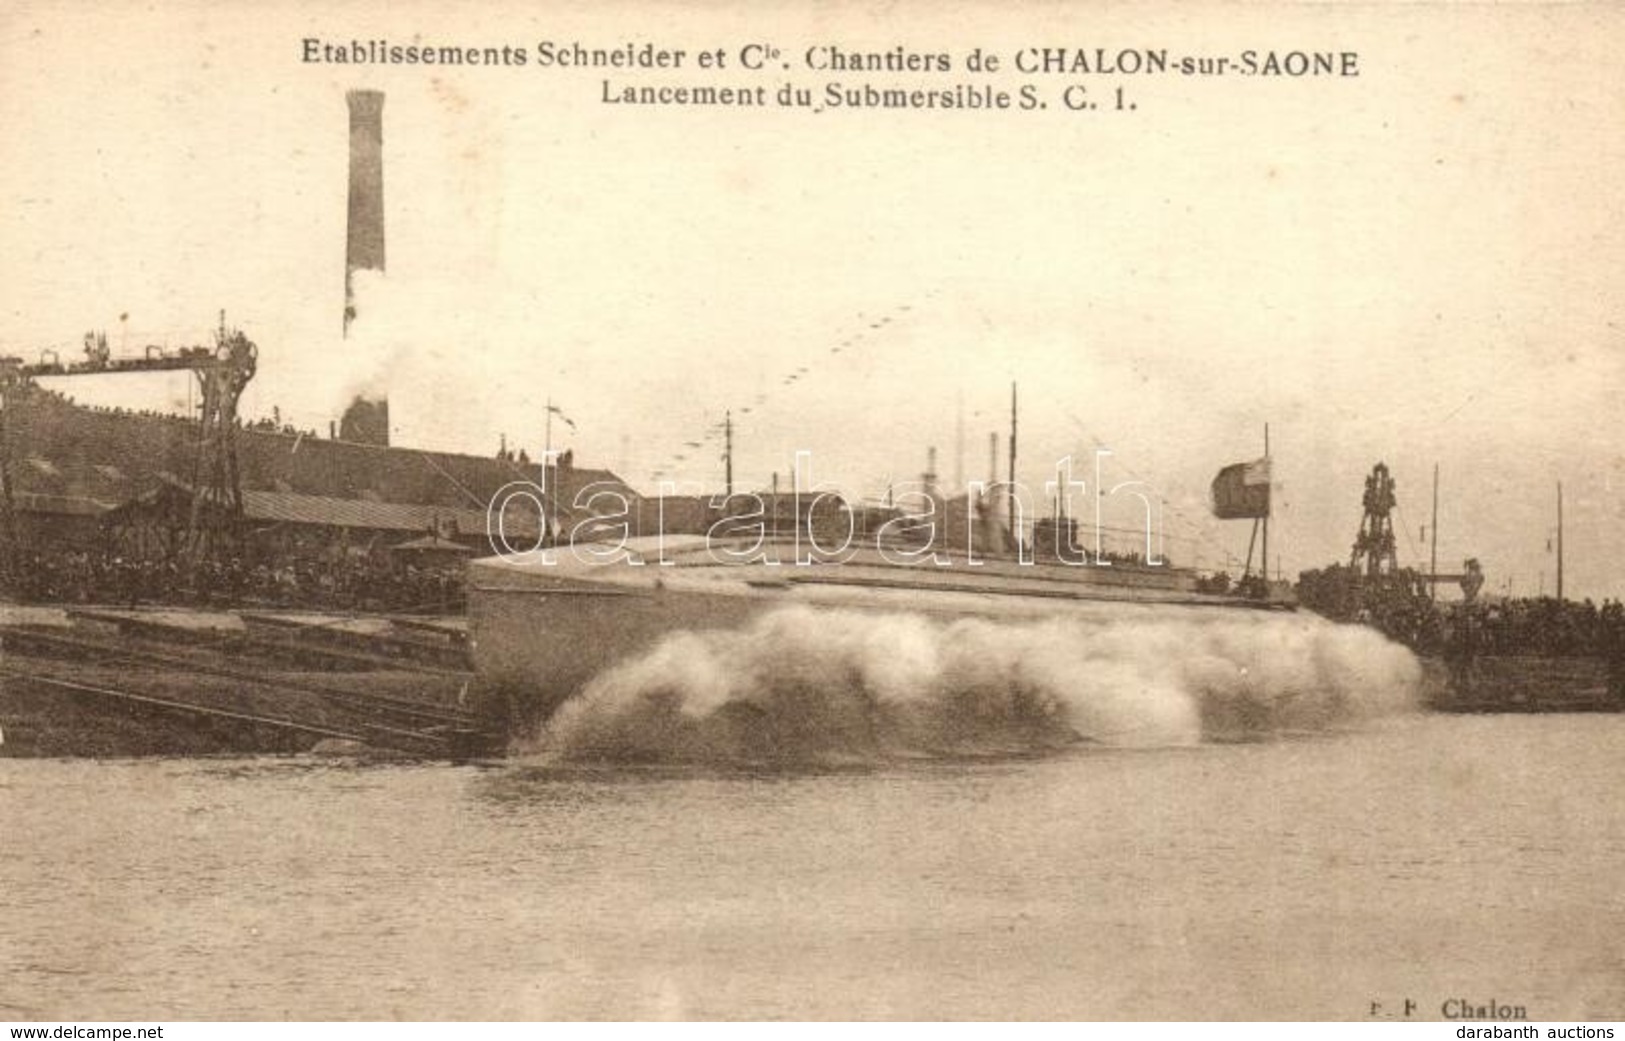 * T2 Chalon-sur-Saone, Etablissements Schneider Et Cie, Lancement Du Submersible S.C.I. / Marine Nationale. French Navy  - Non Classificati